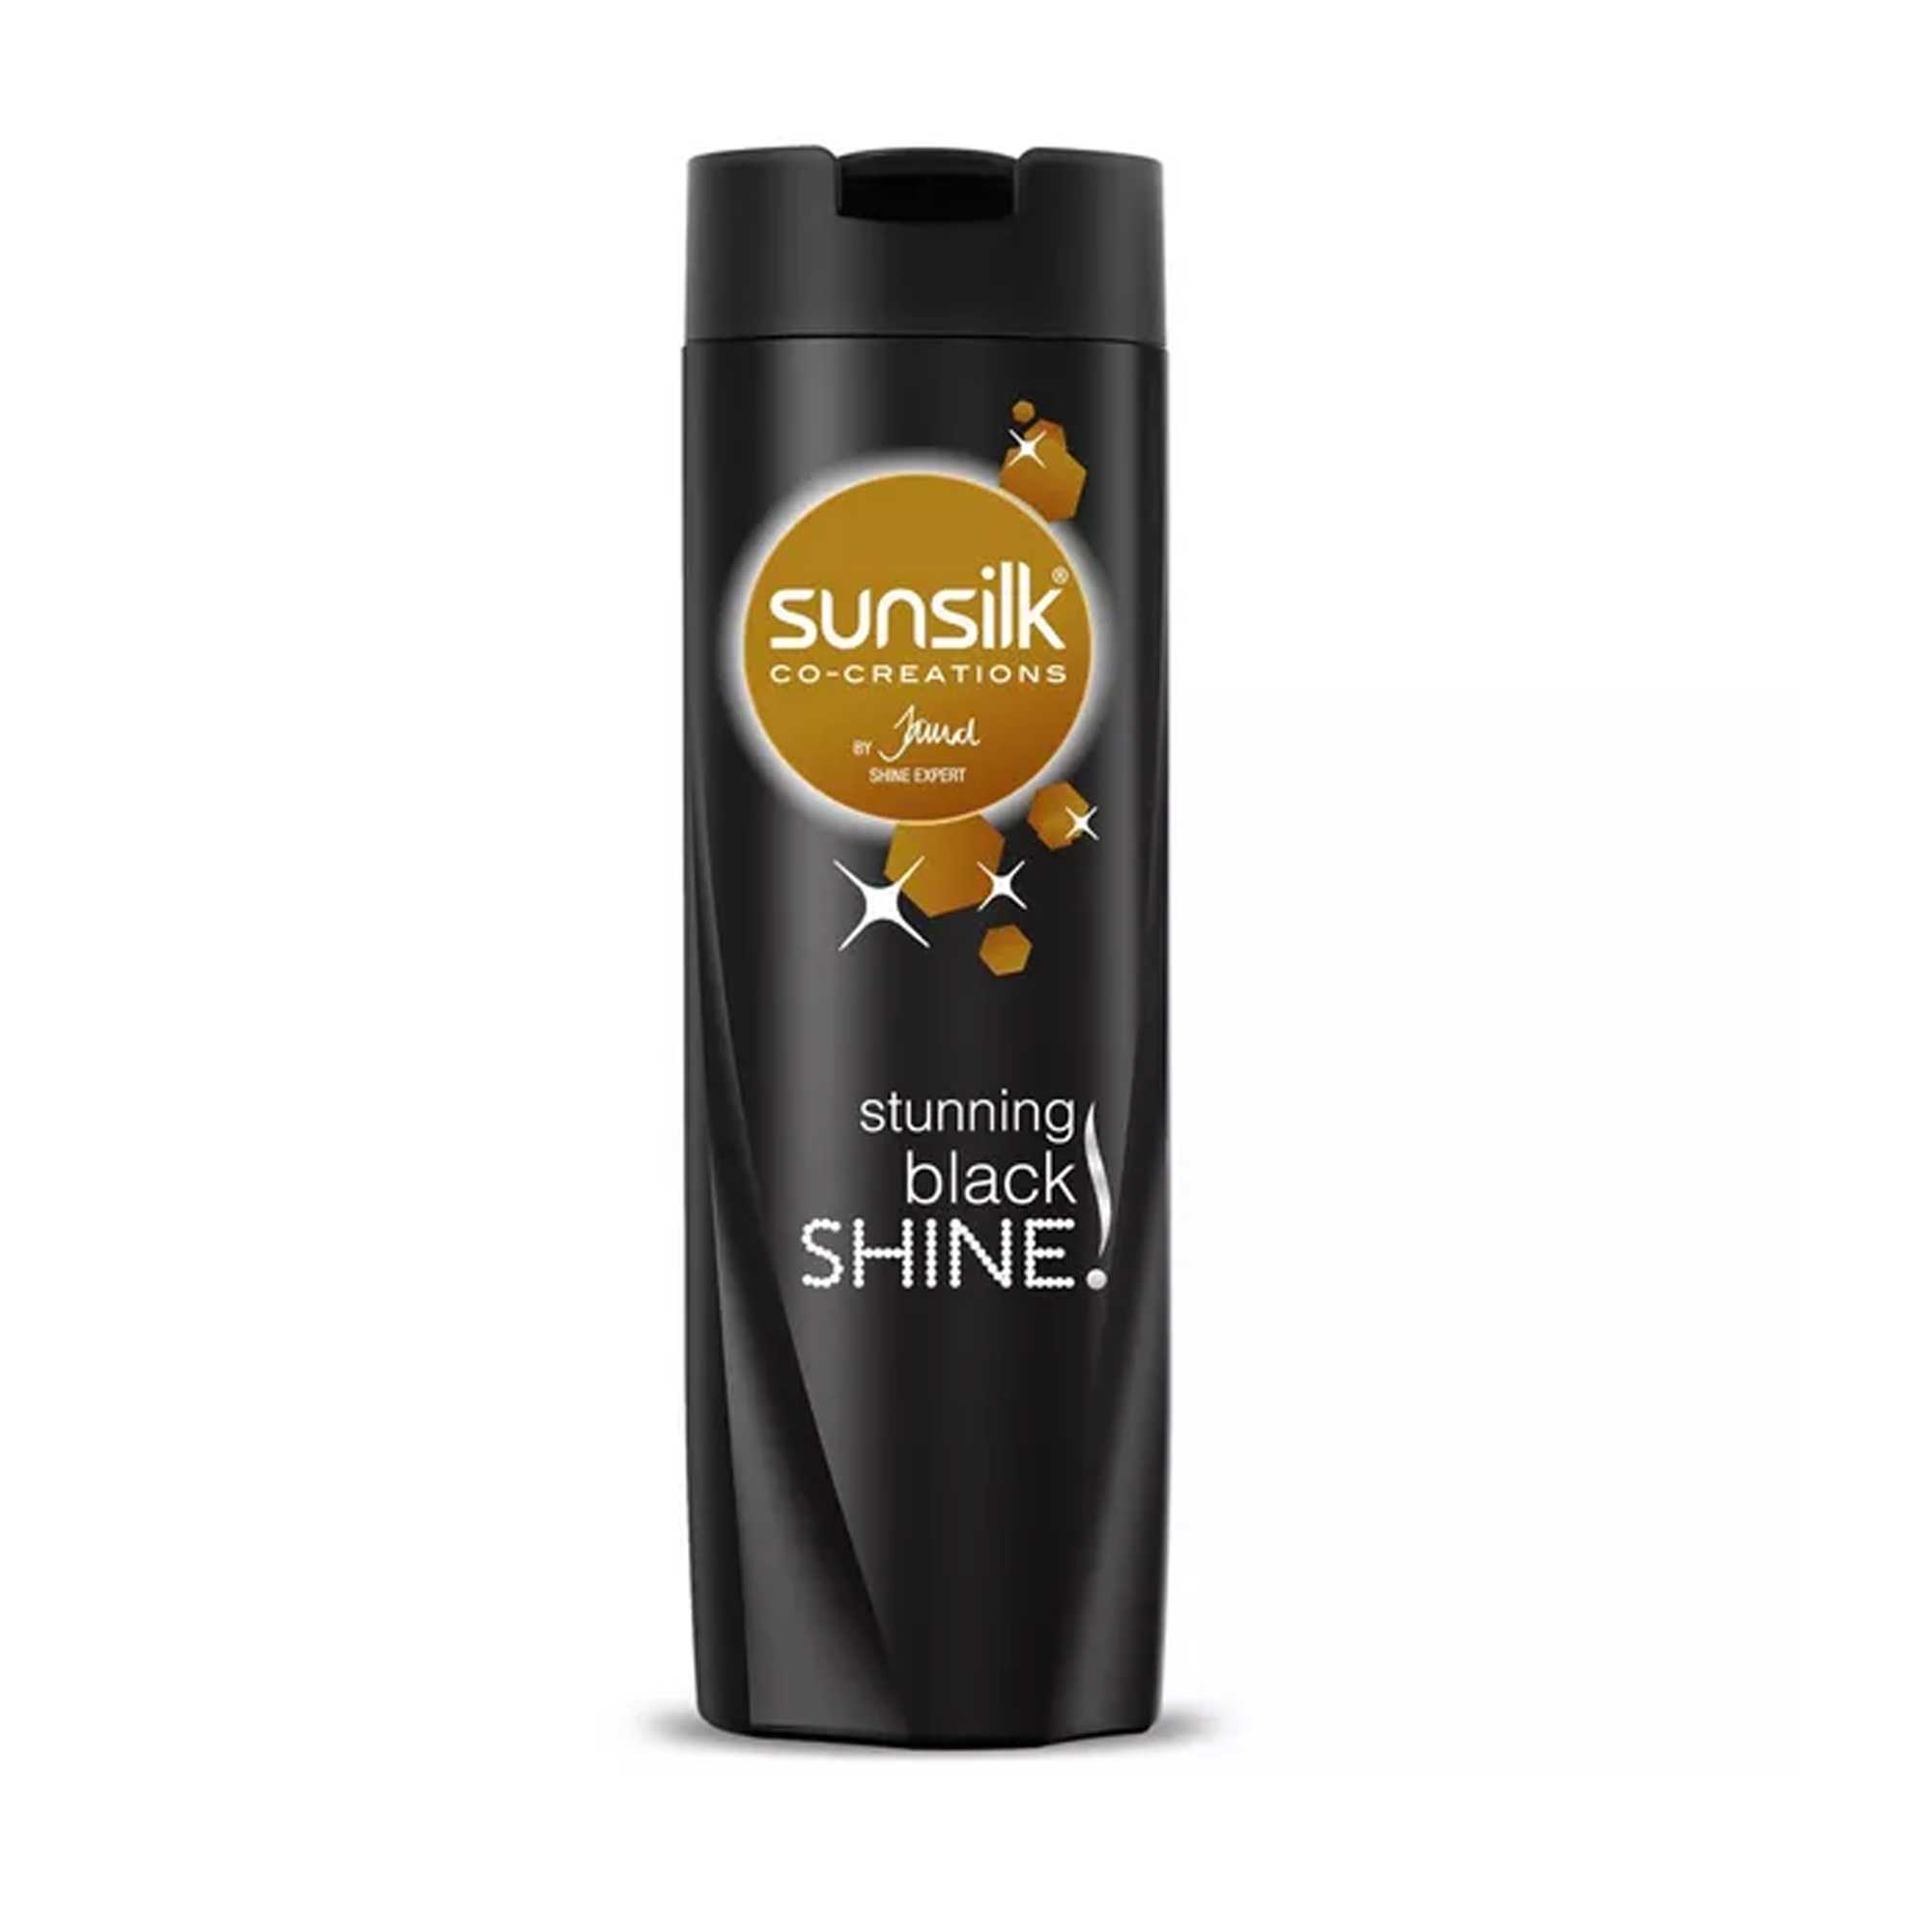 Sunsilk Shampoo Stunning Black Shine 375 ml